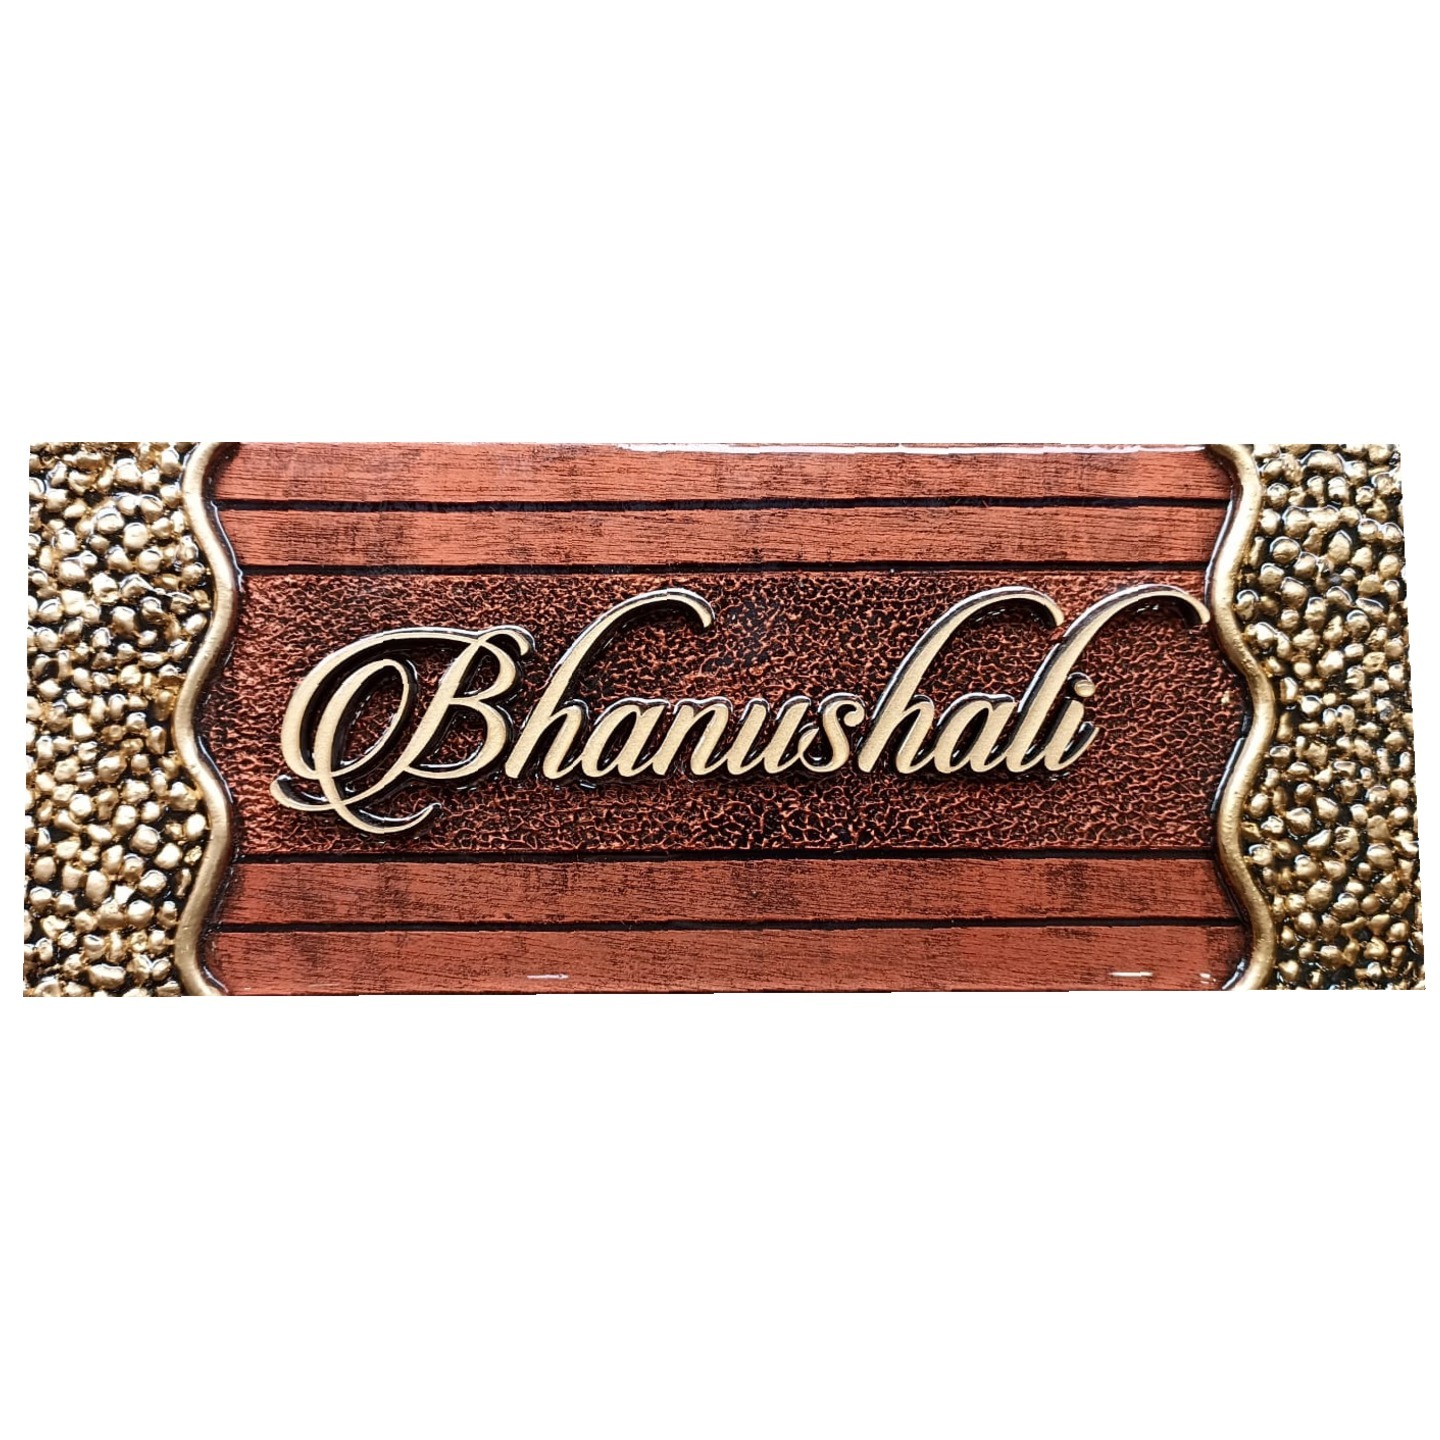 Bhanushali